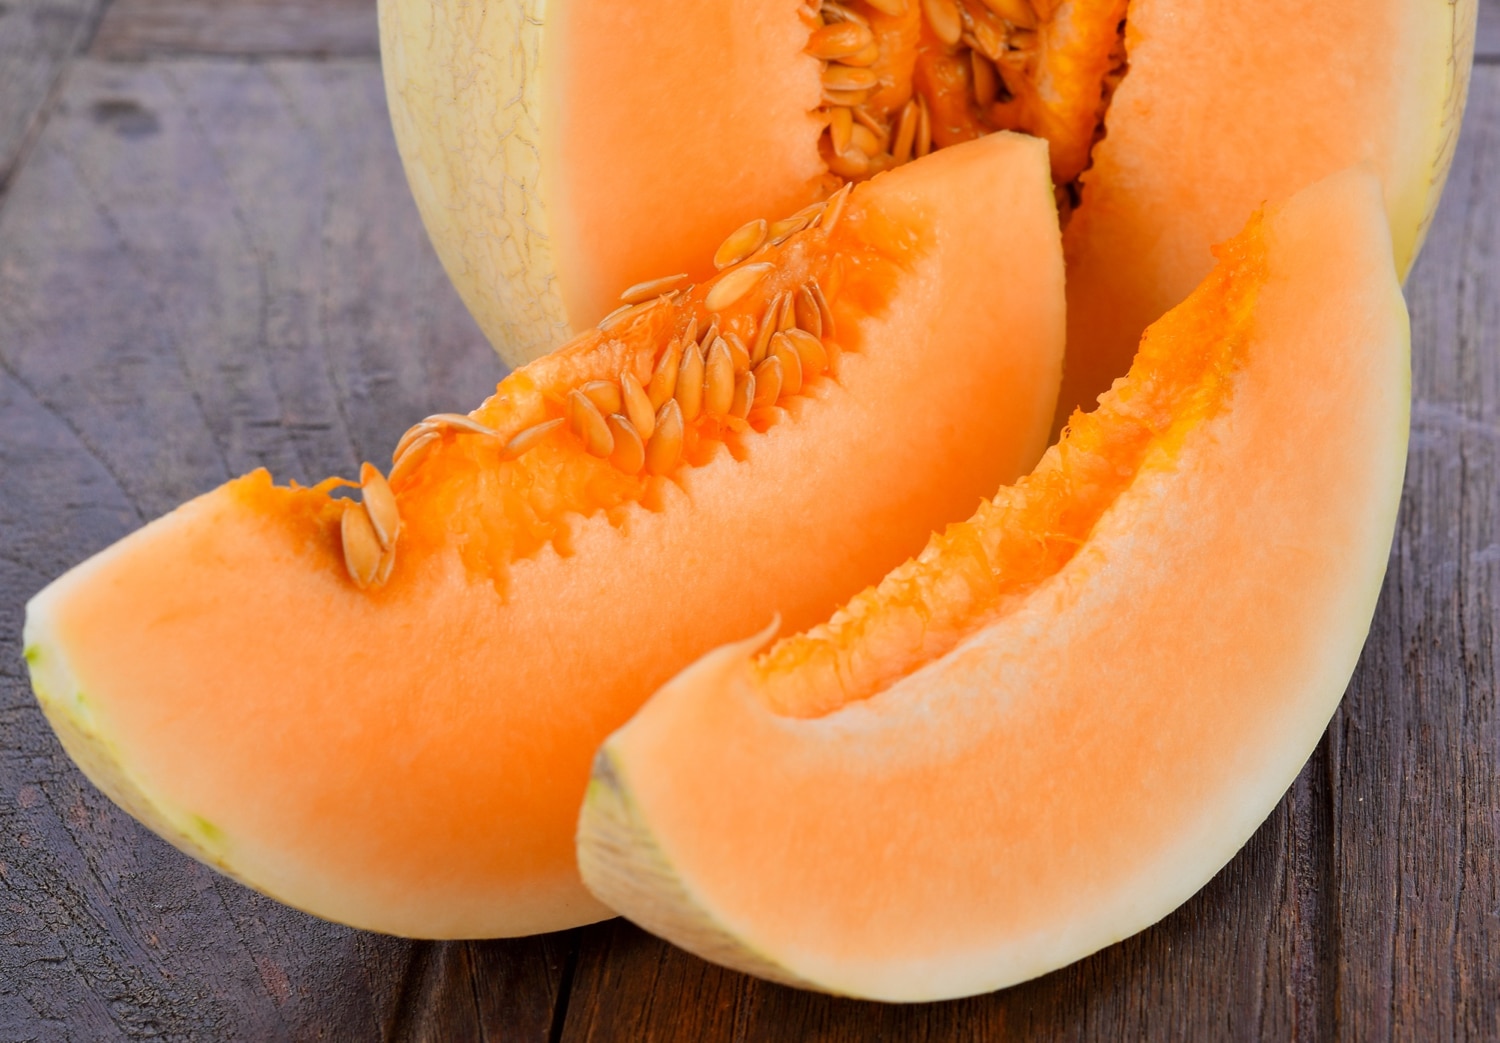 Alemania alerta sobre agroquímico “cancerígeno” en melón de Costa Rica; podría ser un caso aislado, dicen productores